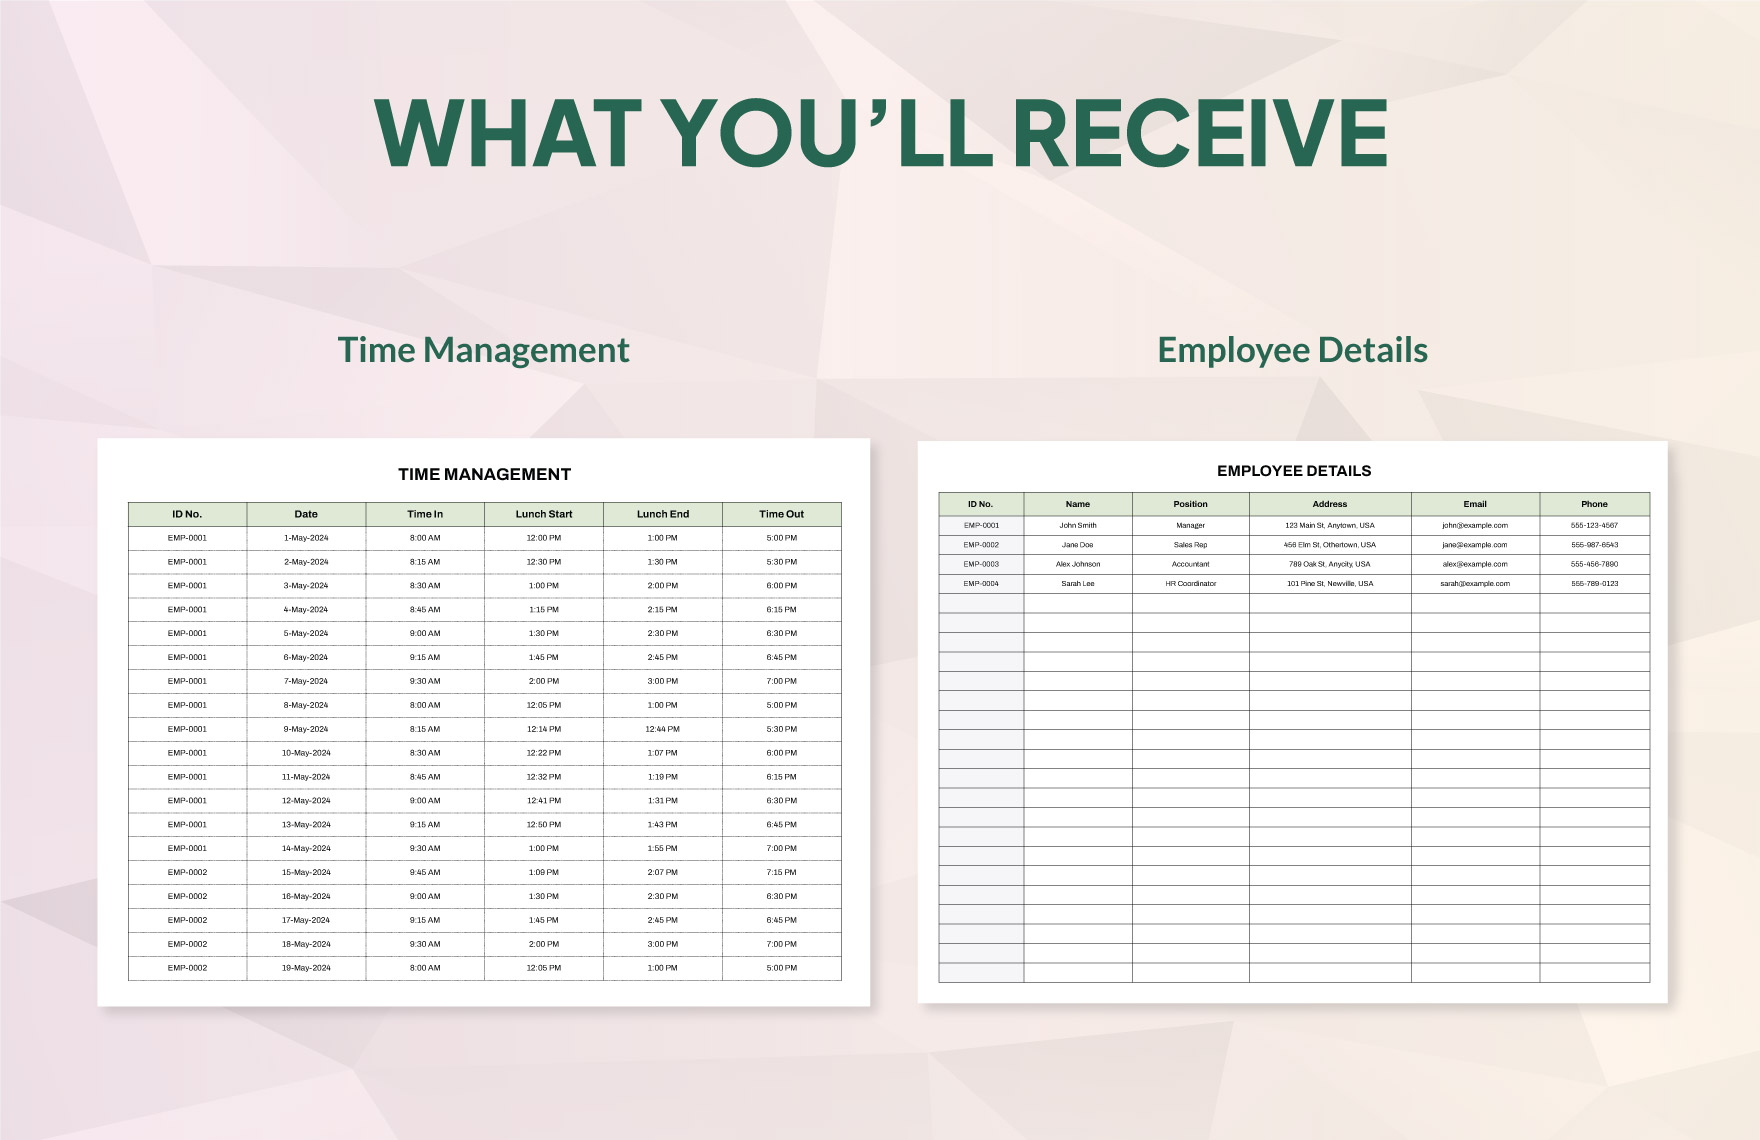 Finance Employee Timesheet Management Template